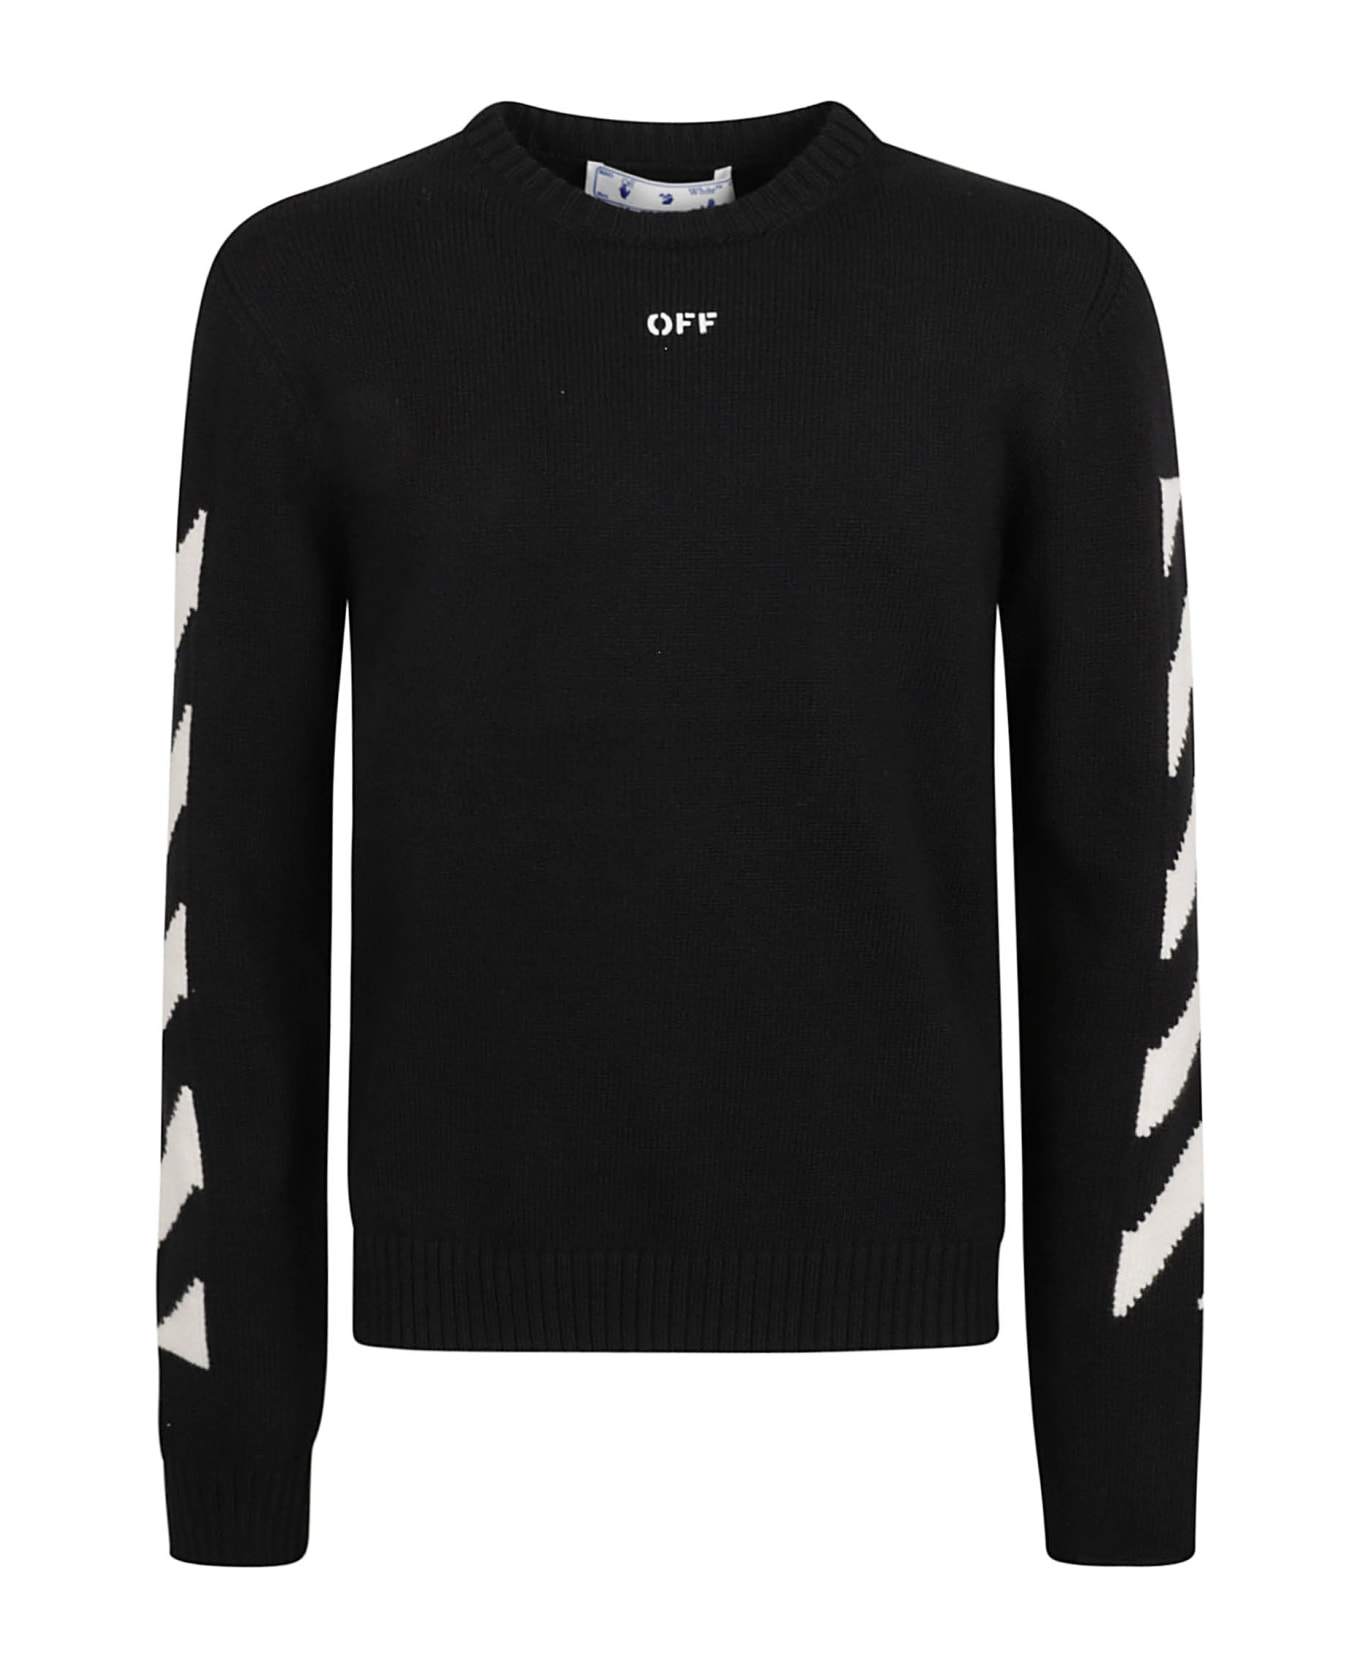 Off-White Diag Arrow Knit Crewneck Sweater - Black/white